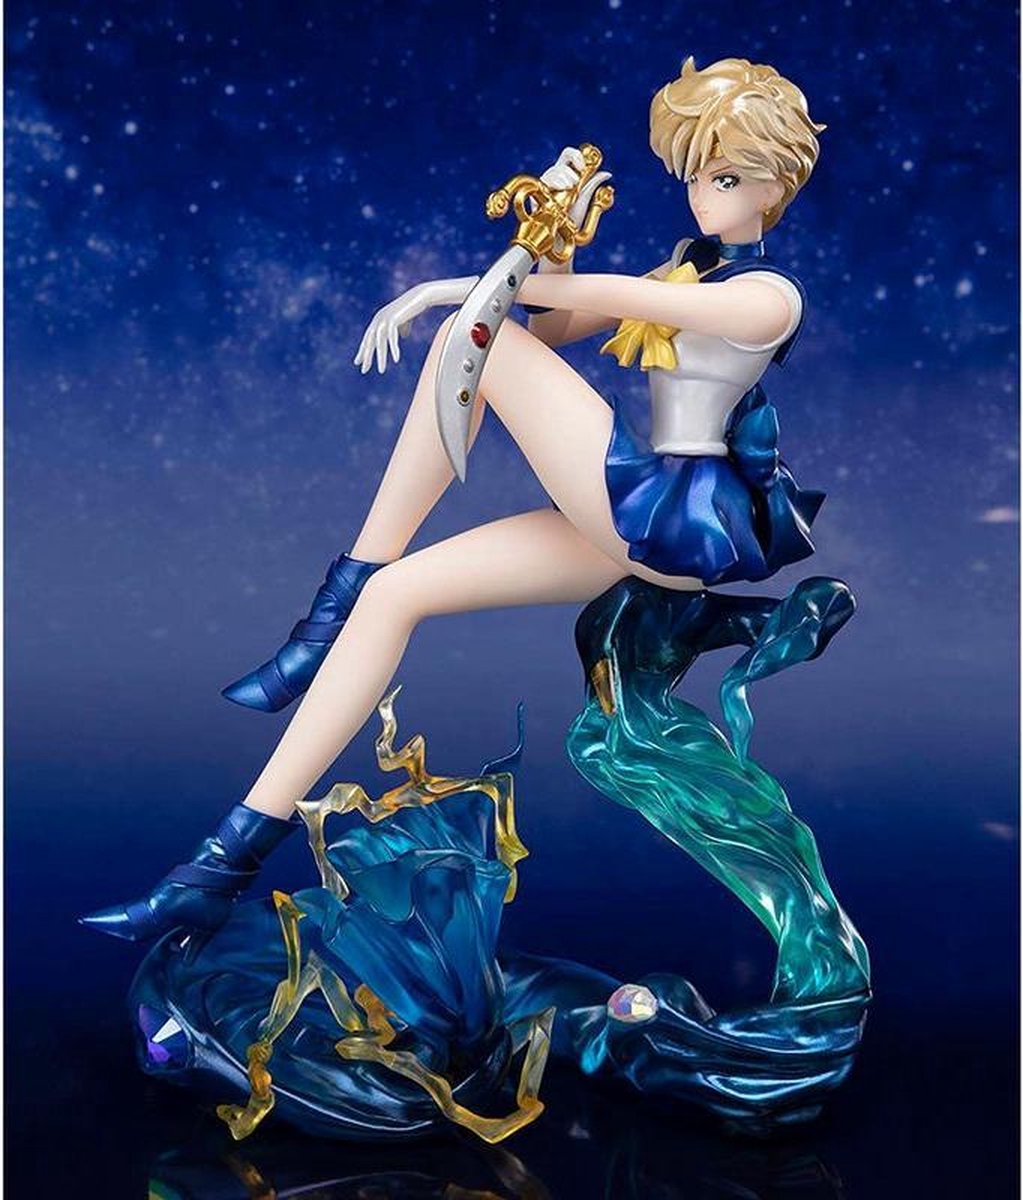 [Merchandise] Bandai Sailor Moon FZ Chouette 25th A. Figure